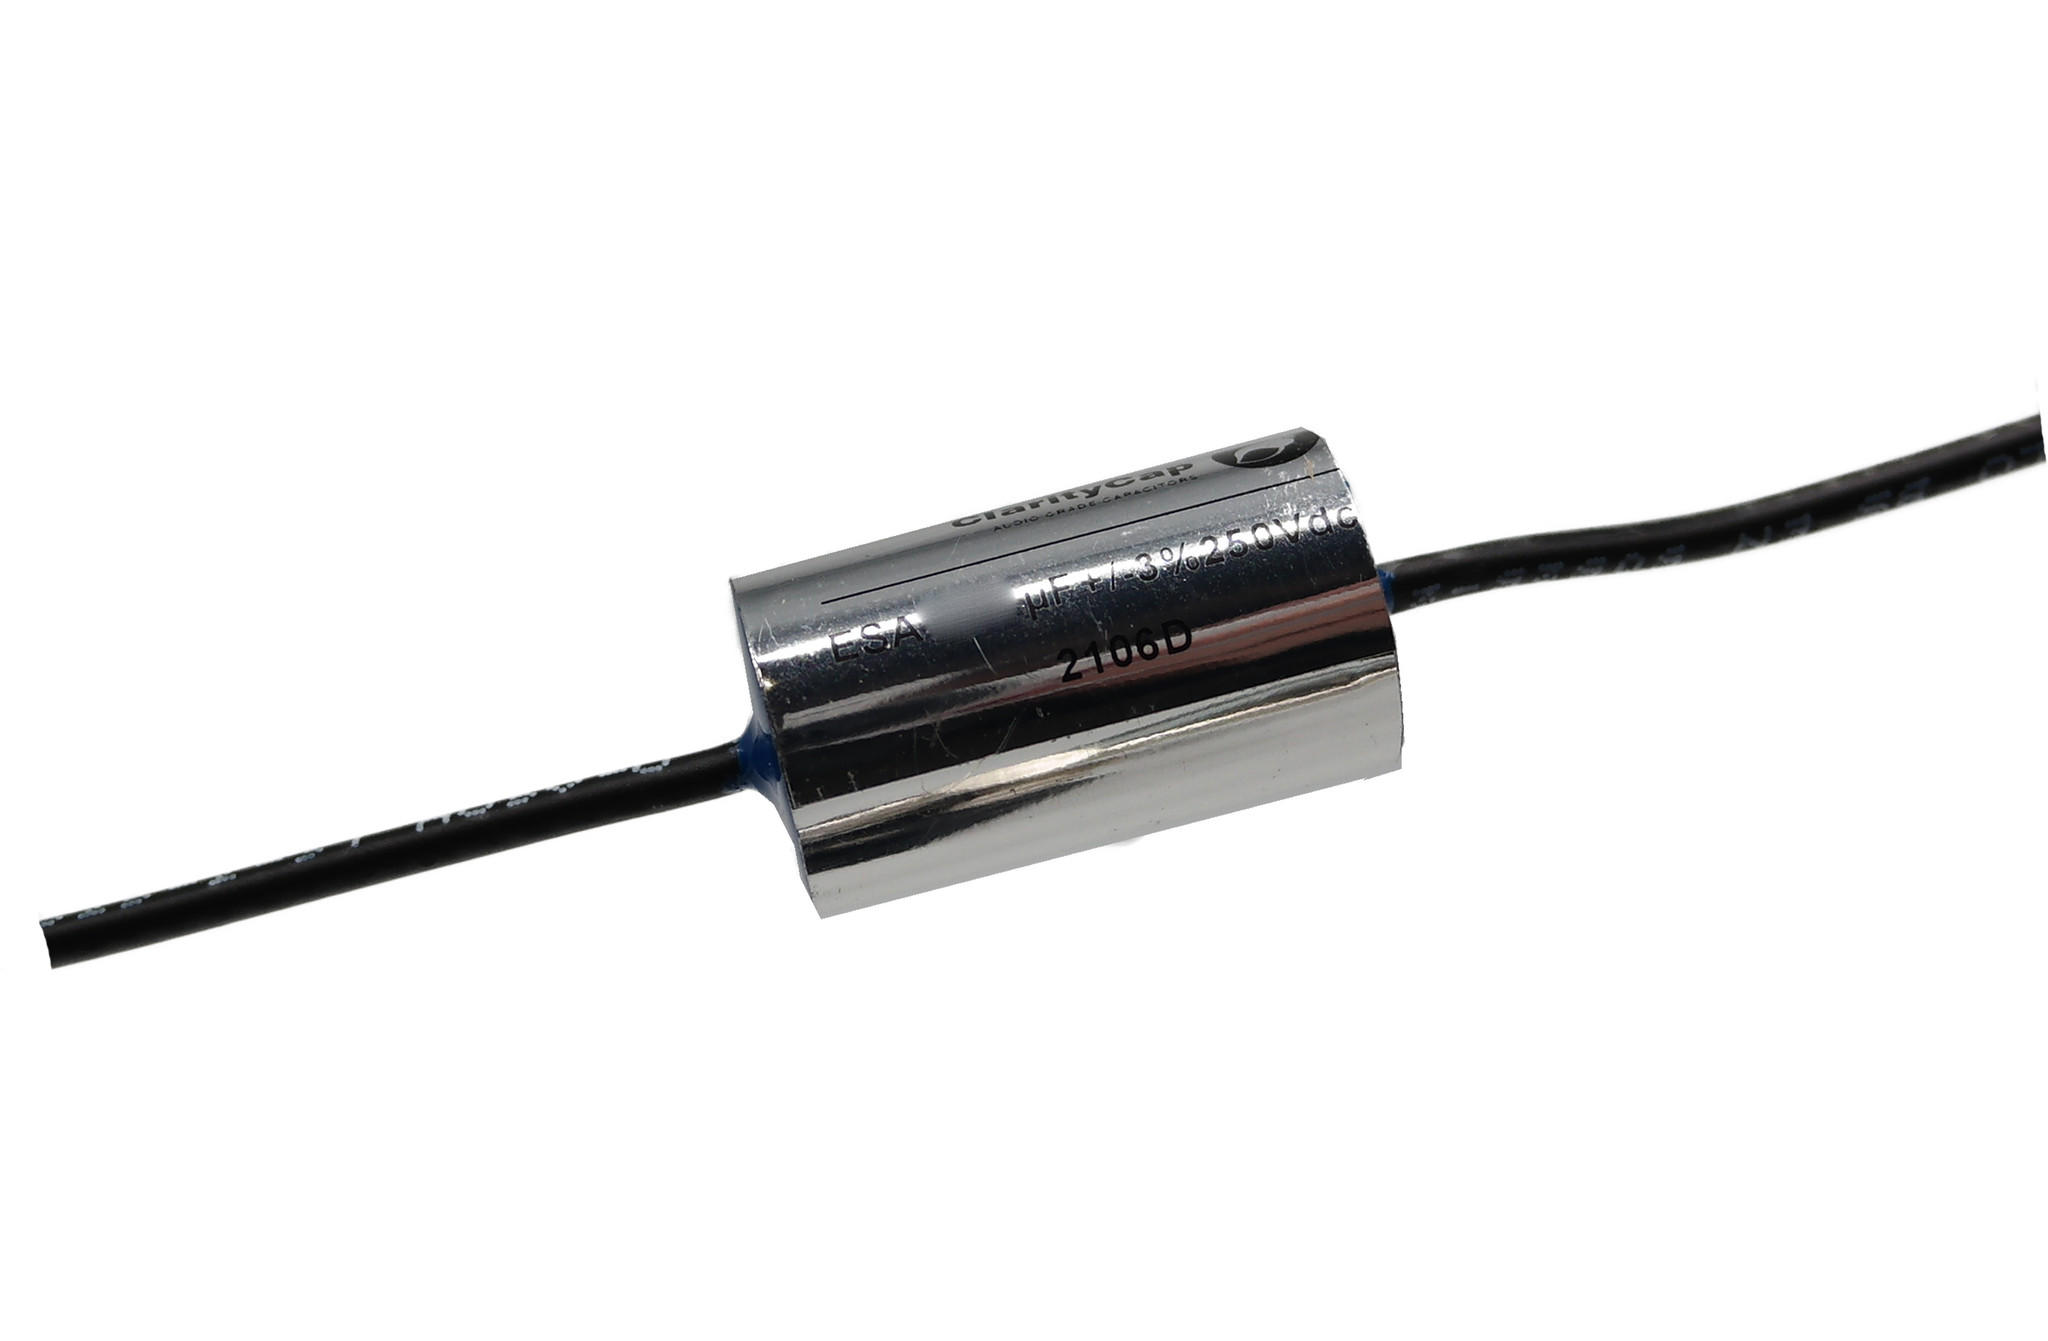 Condensatoare - Condensator film ClarityCap ESA470nH250Vdc | 0.47 µF | 3% | 250 V, audioclub.ro